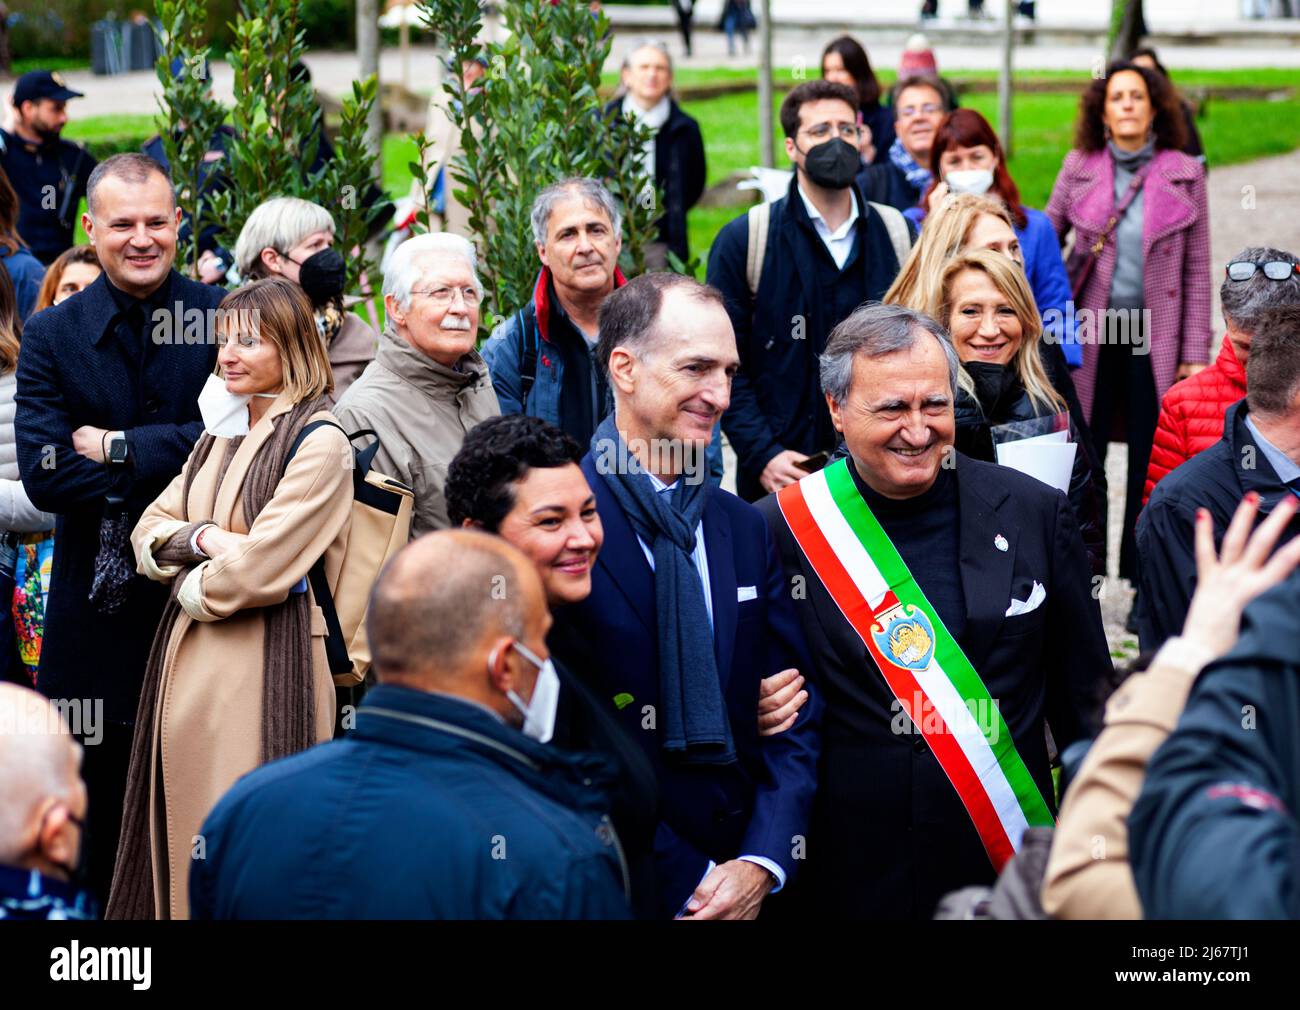 Venise, Italie - avril 20 : le maire de Venise, Luigi Brugnaro et le conservateur du Pavillon de Venise, Giovanna Zabotti pendant le Pavillon de Venise inau Banque D'Images